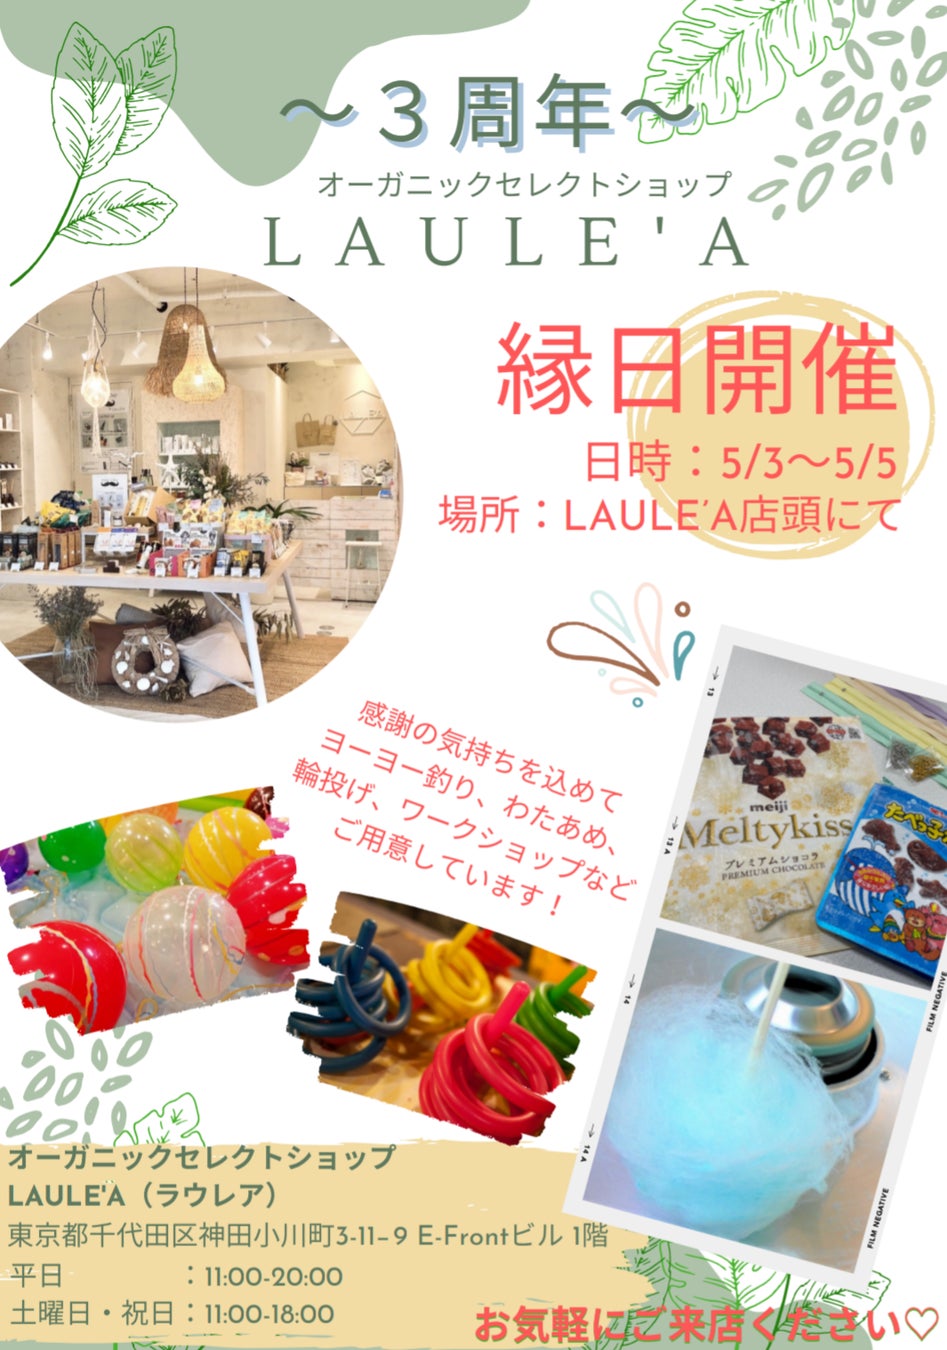 【祝3周年】LAULE'A(ラウレア)が5月3日(金祝)〜6日(月休)の4日間限定"縁日"を開催！